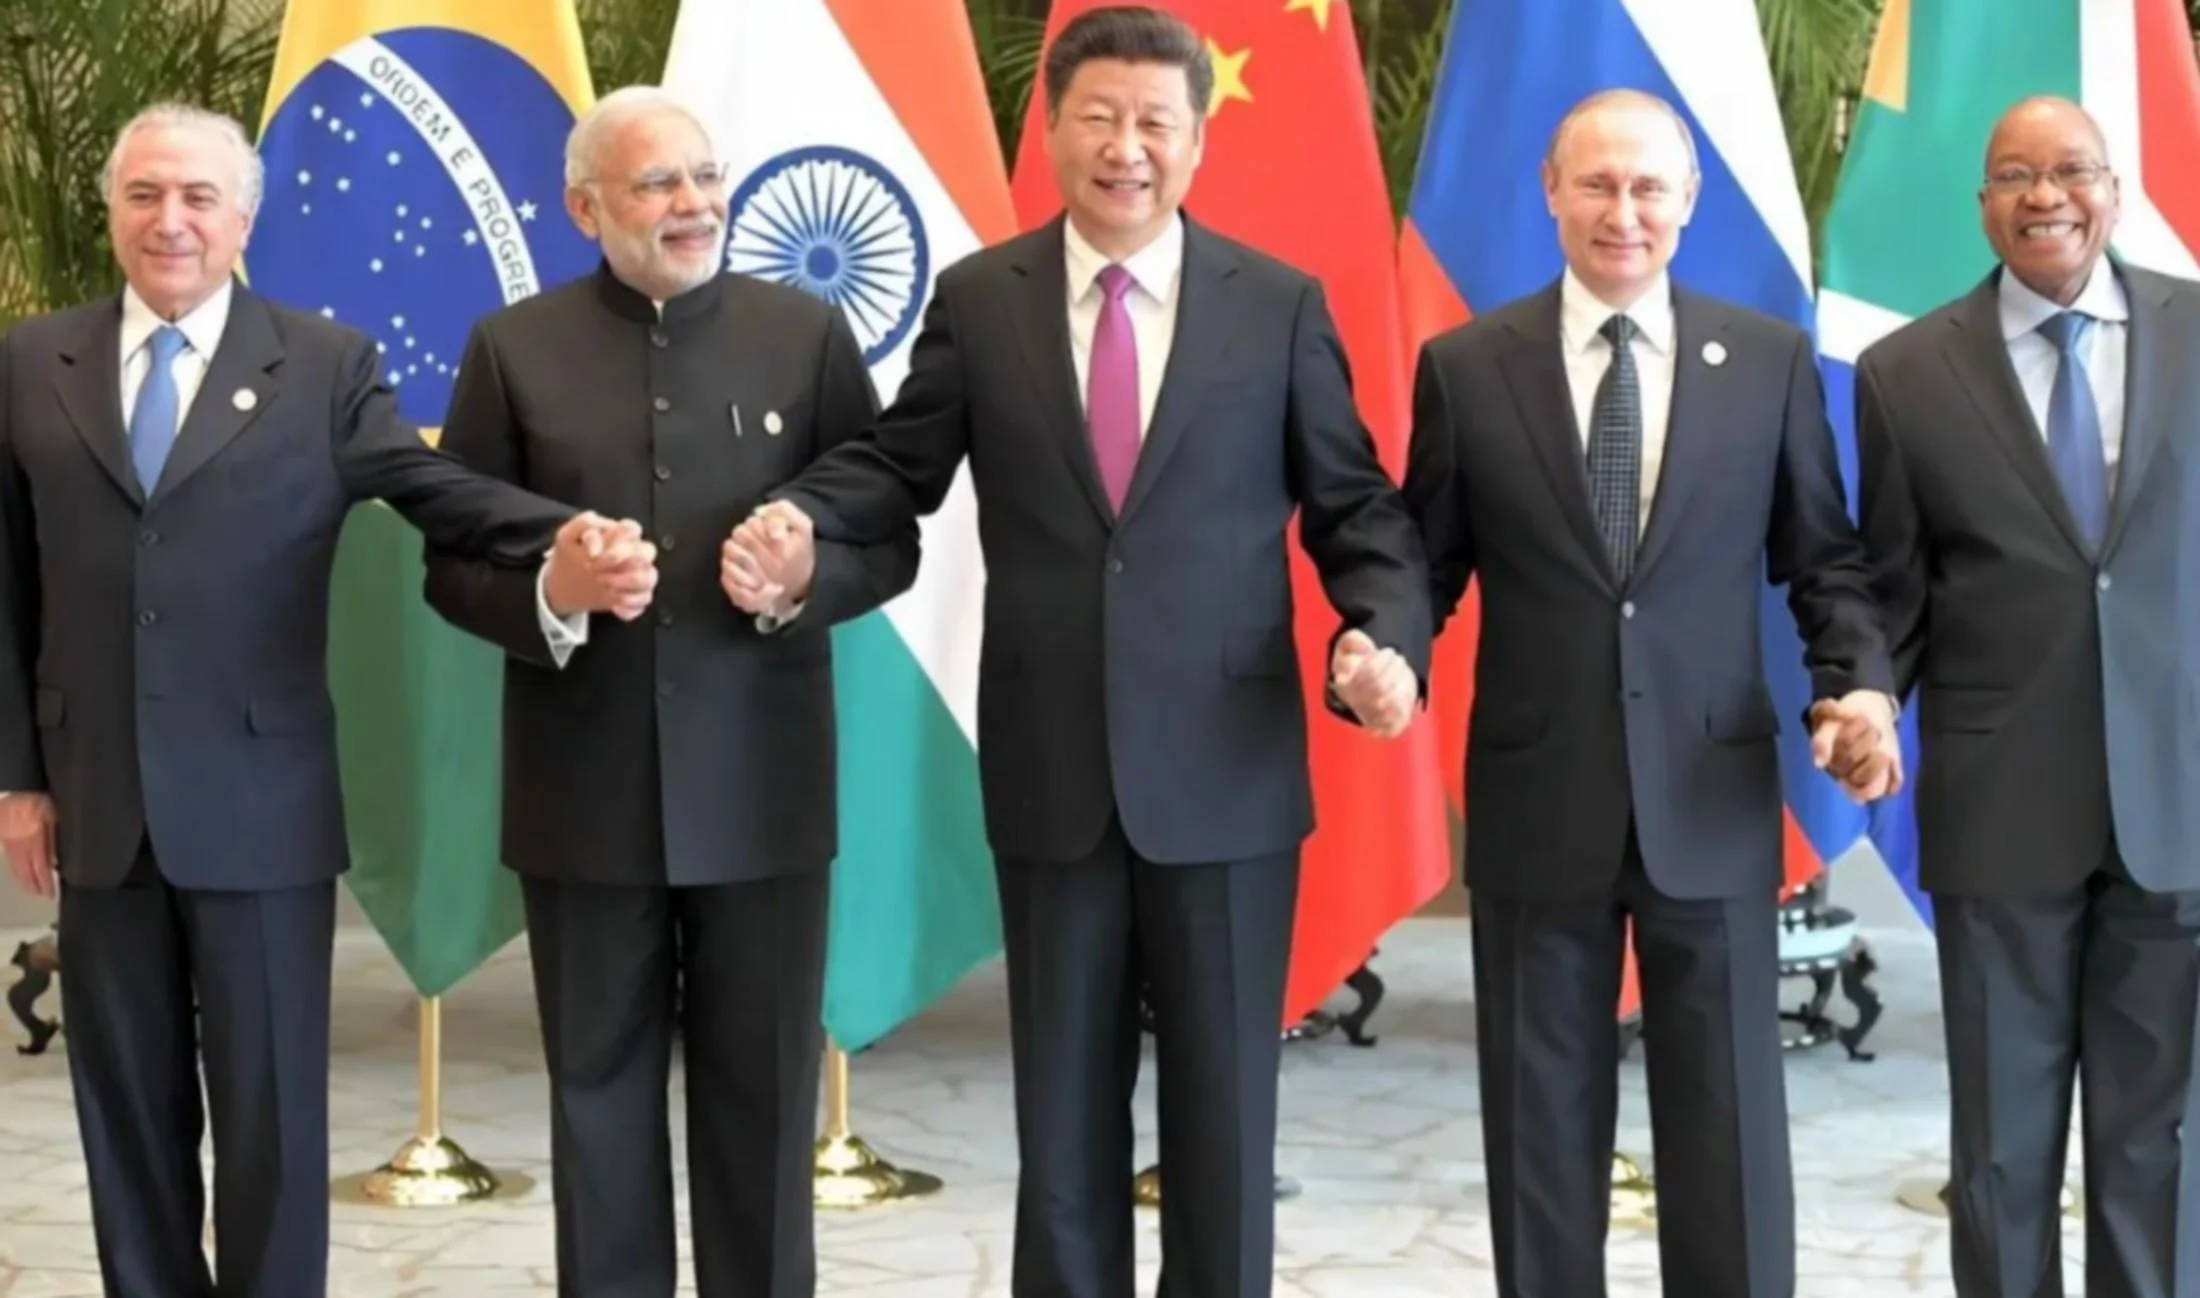 Už i Pákistán žádá o členství ve skupině BRICS